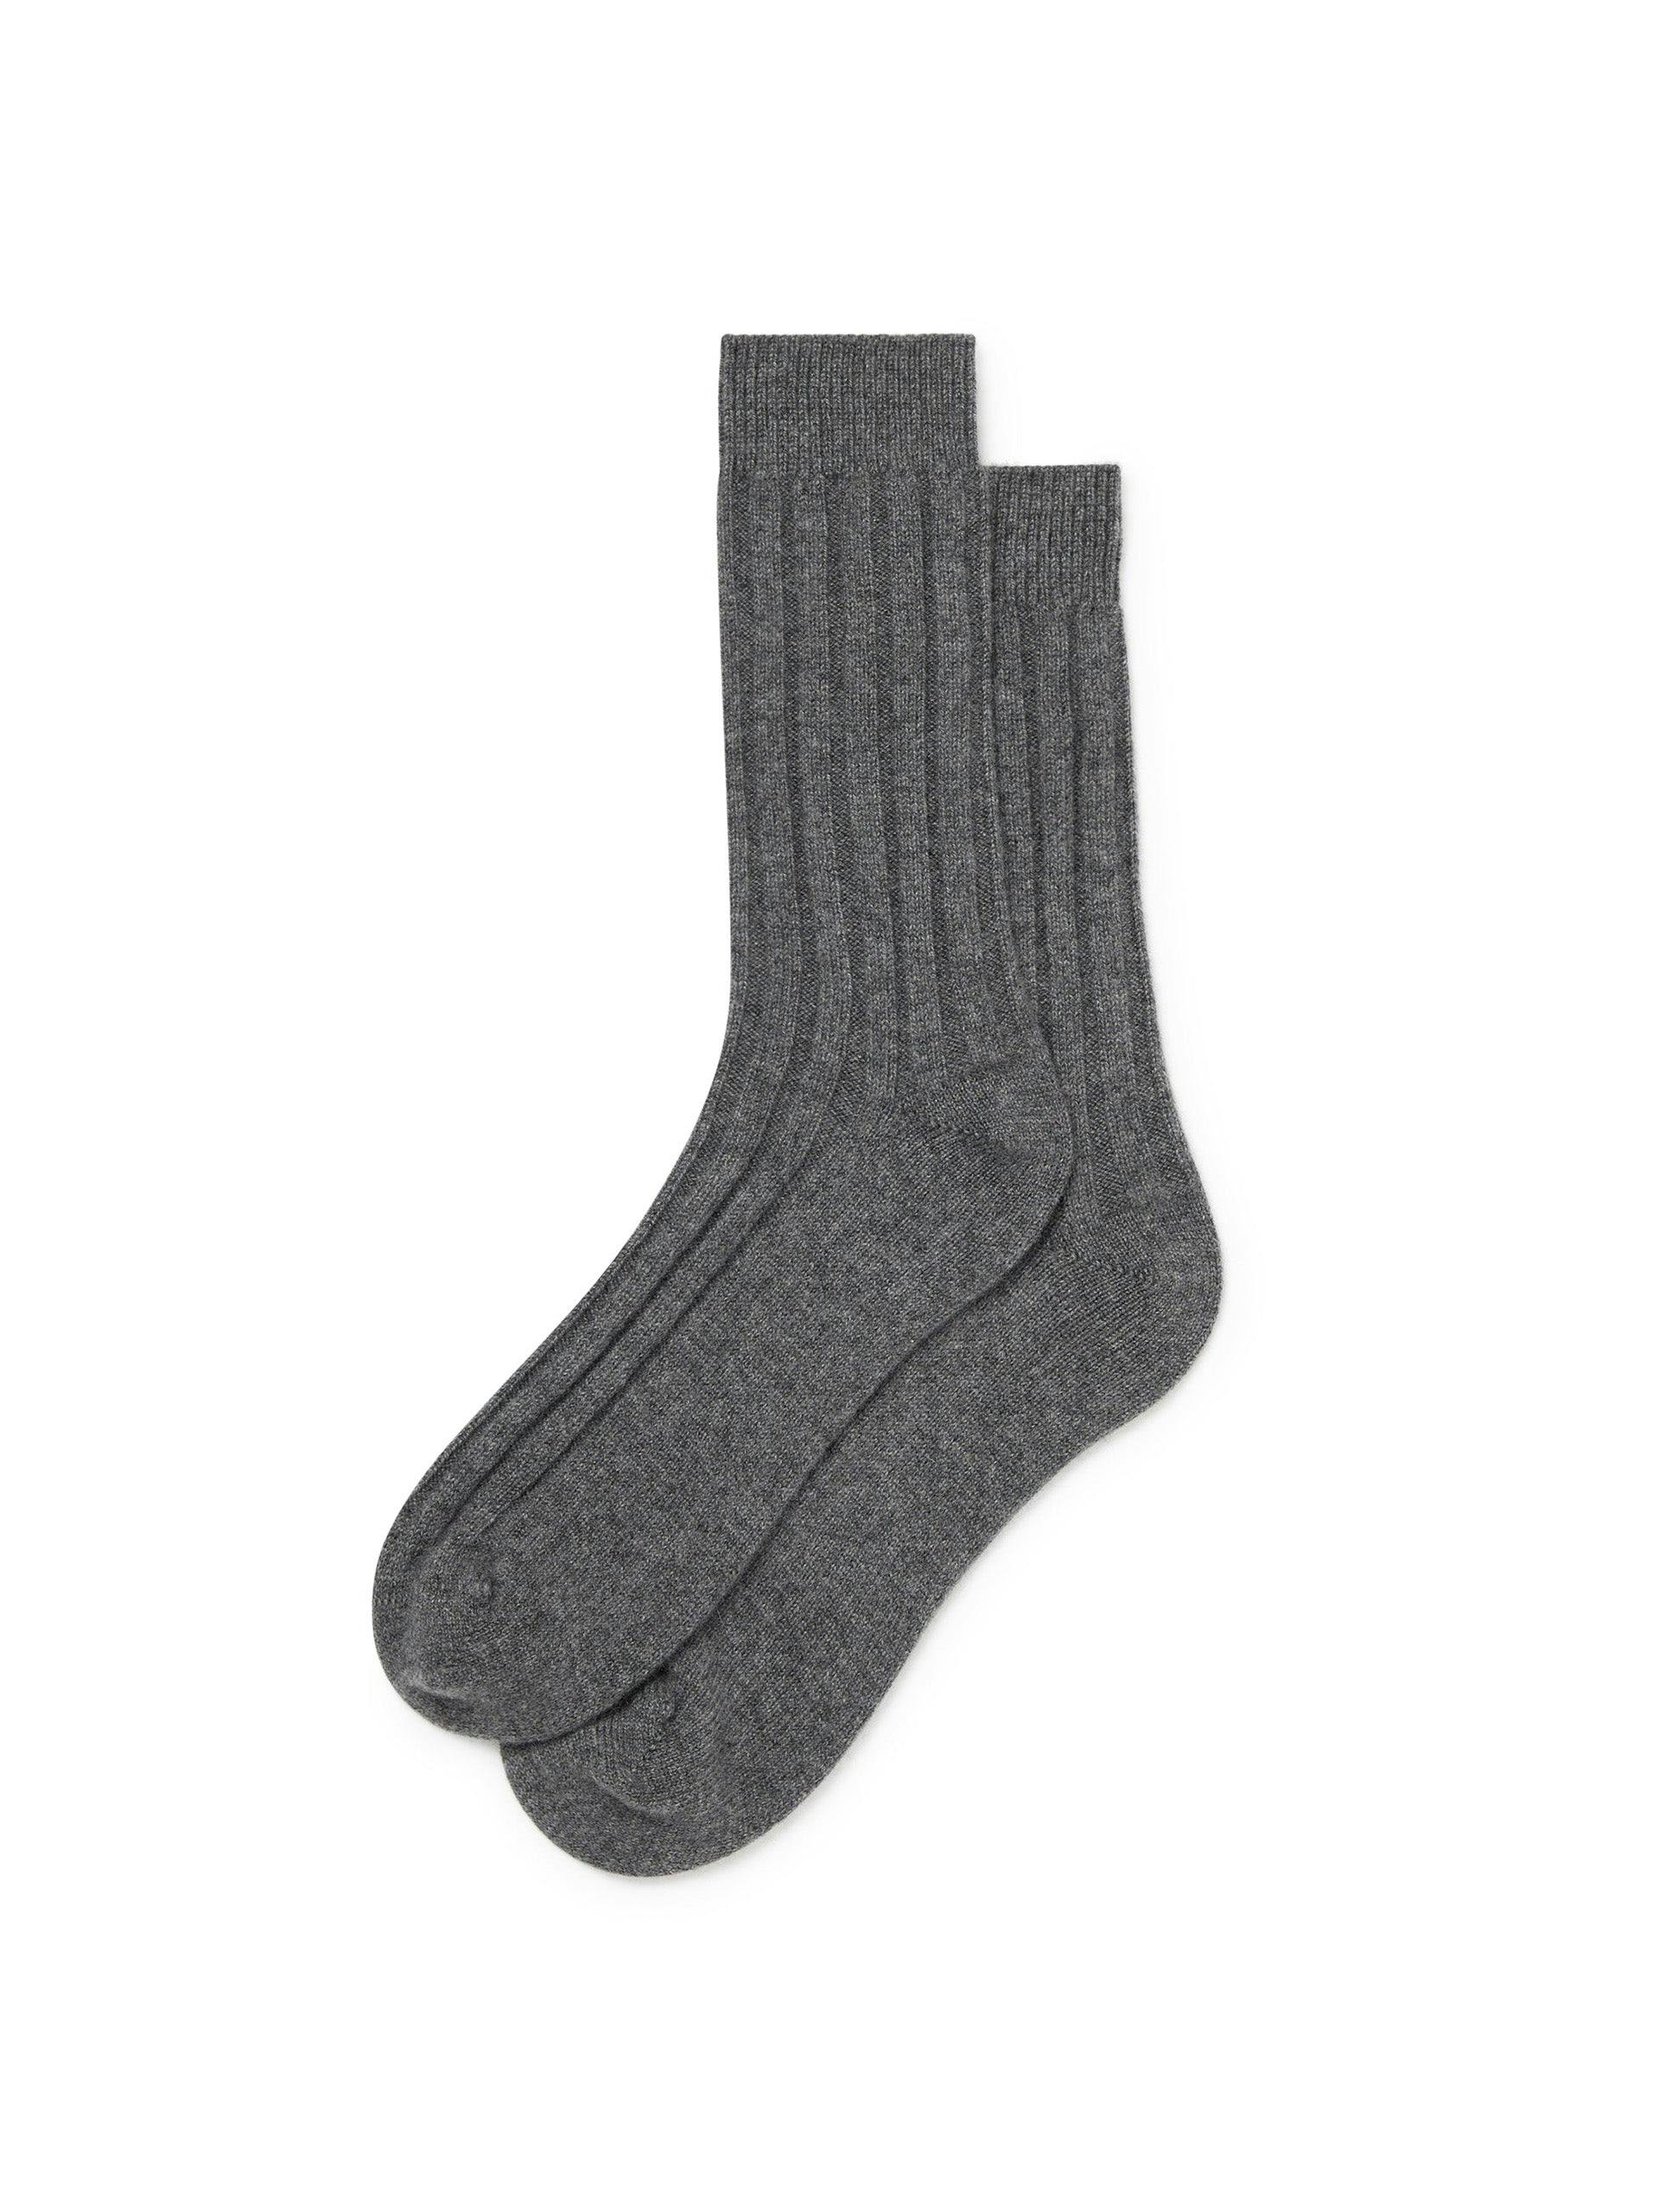 Men’s cashmere socks in Slate